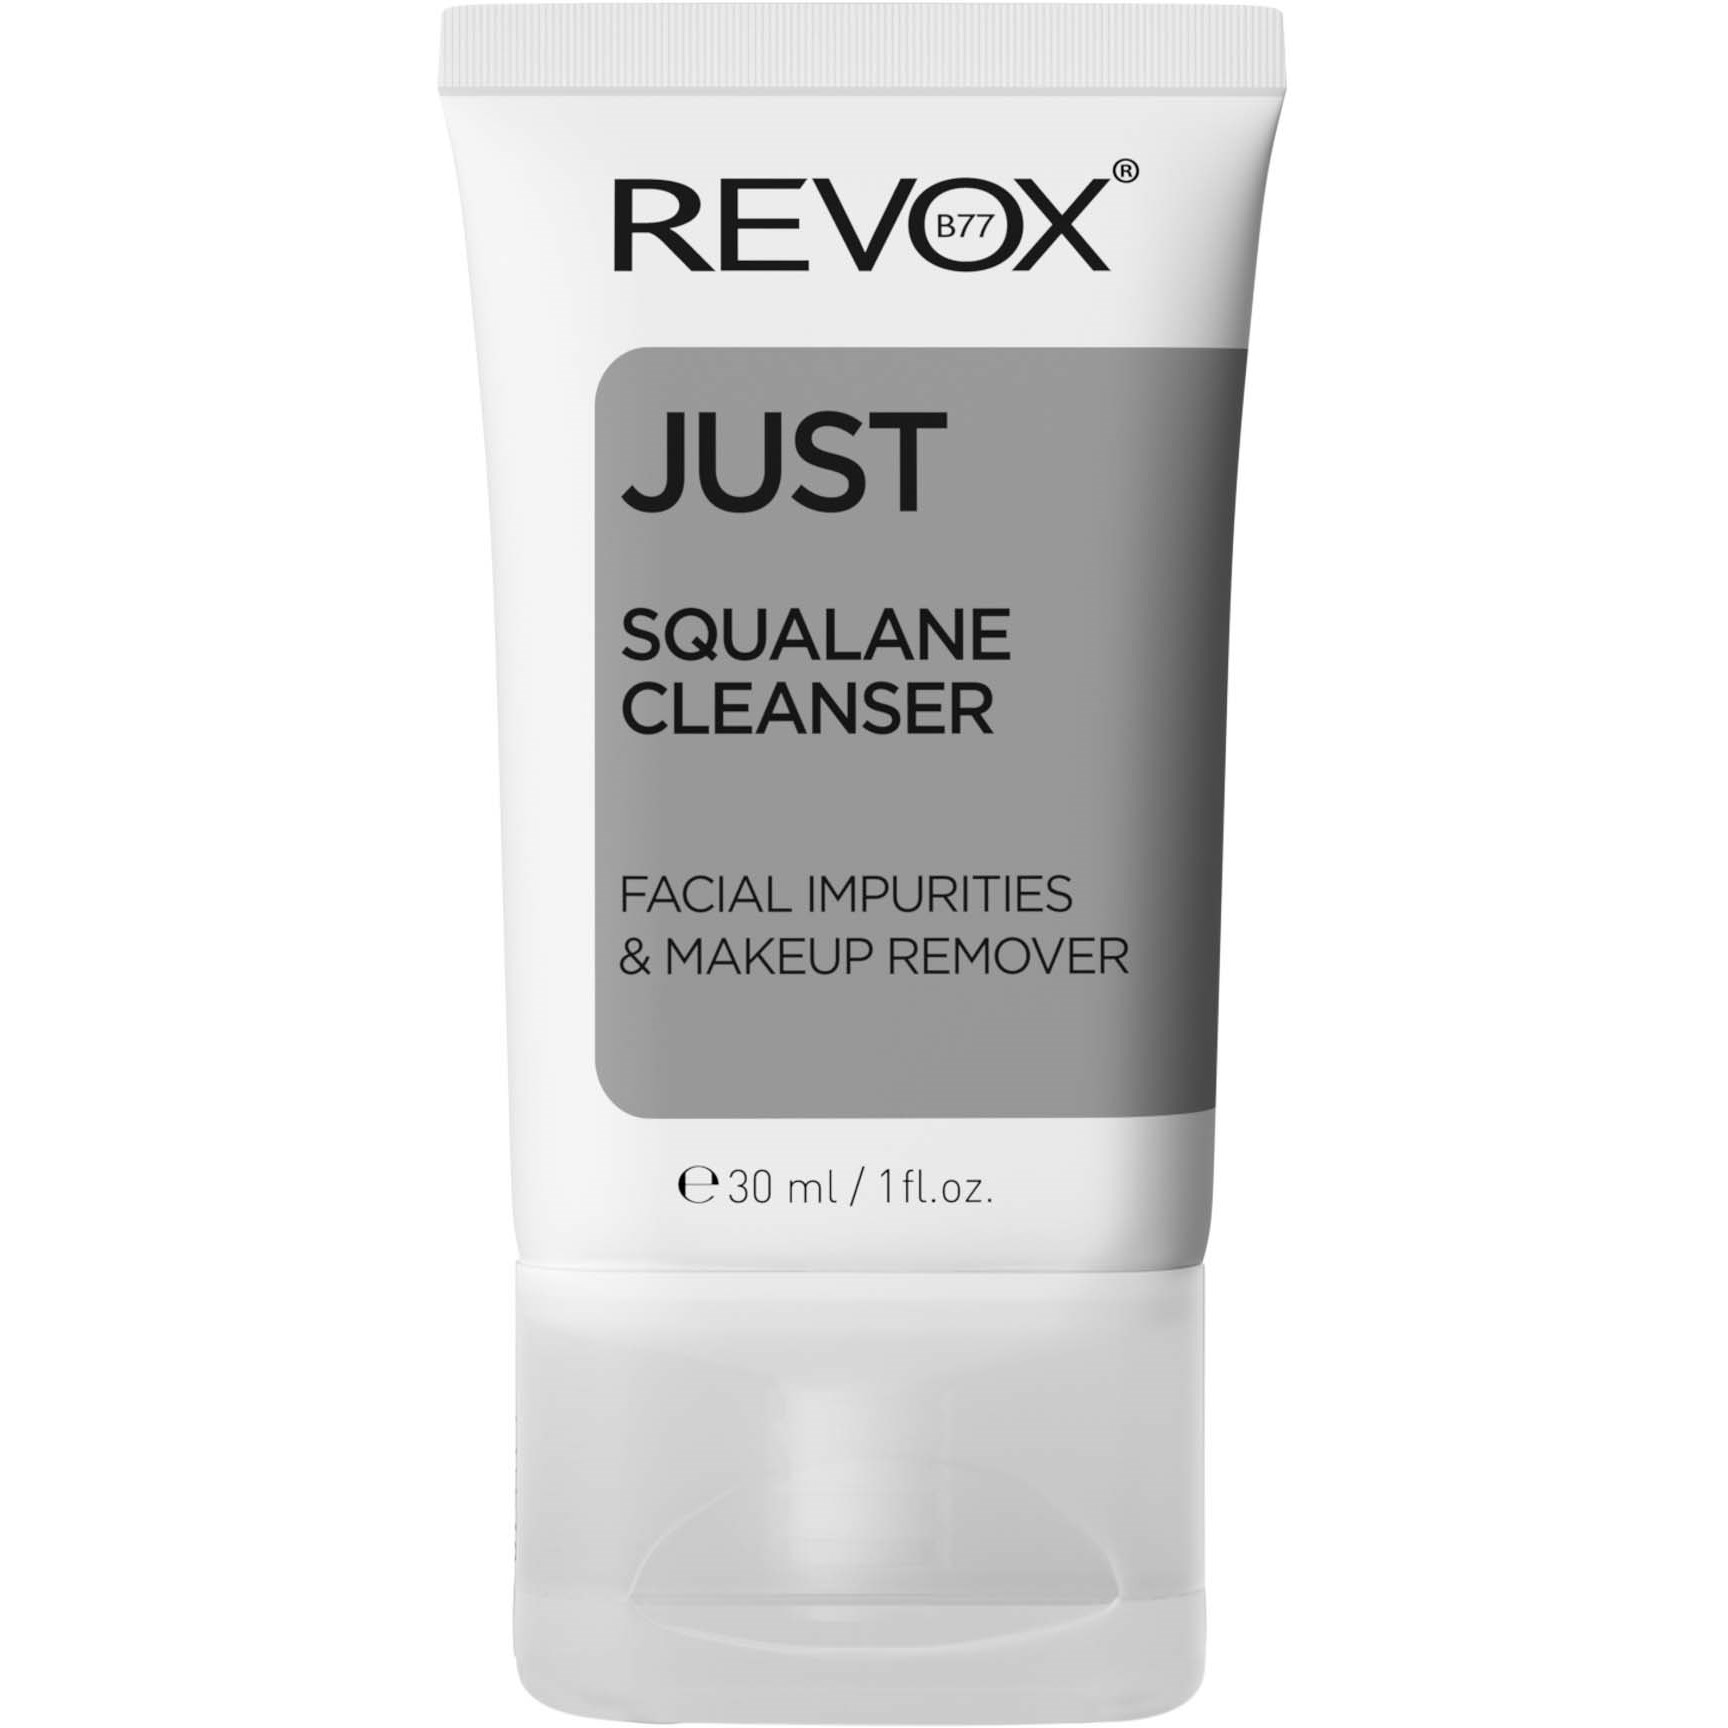 Revox JUST REVOX B77 Squalane Cleanser 30 ml